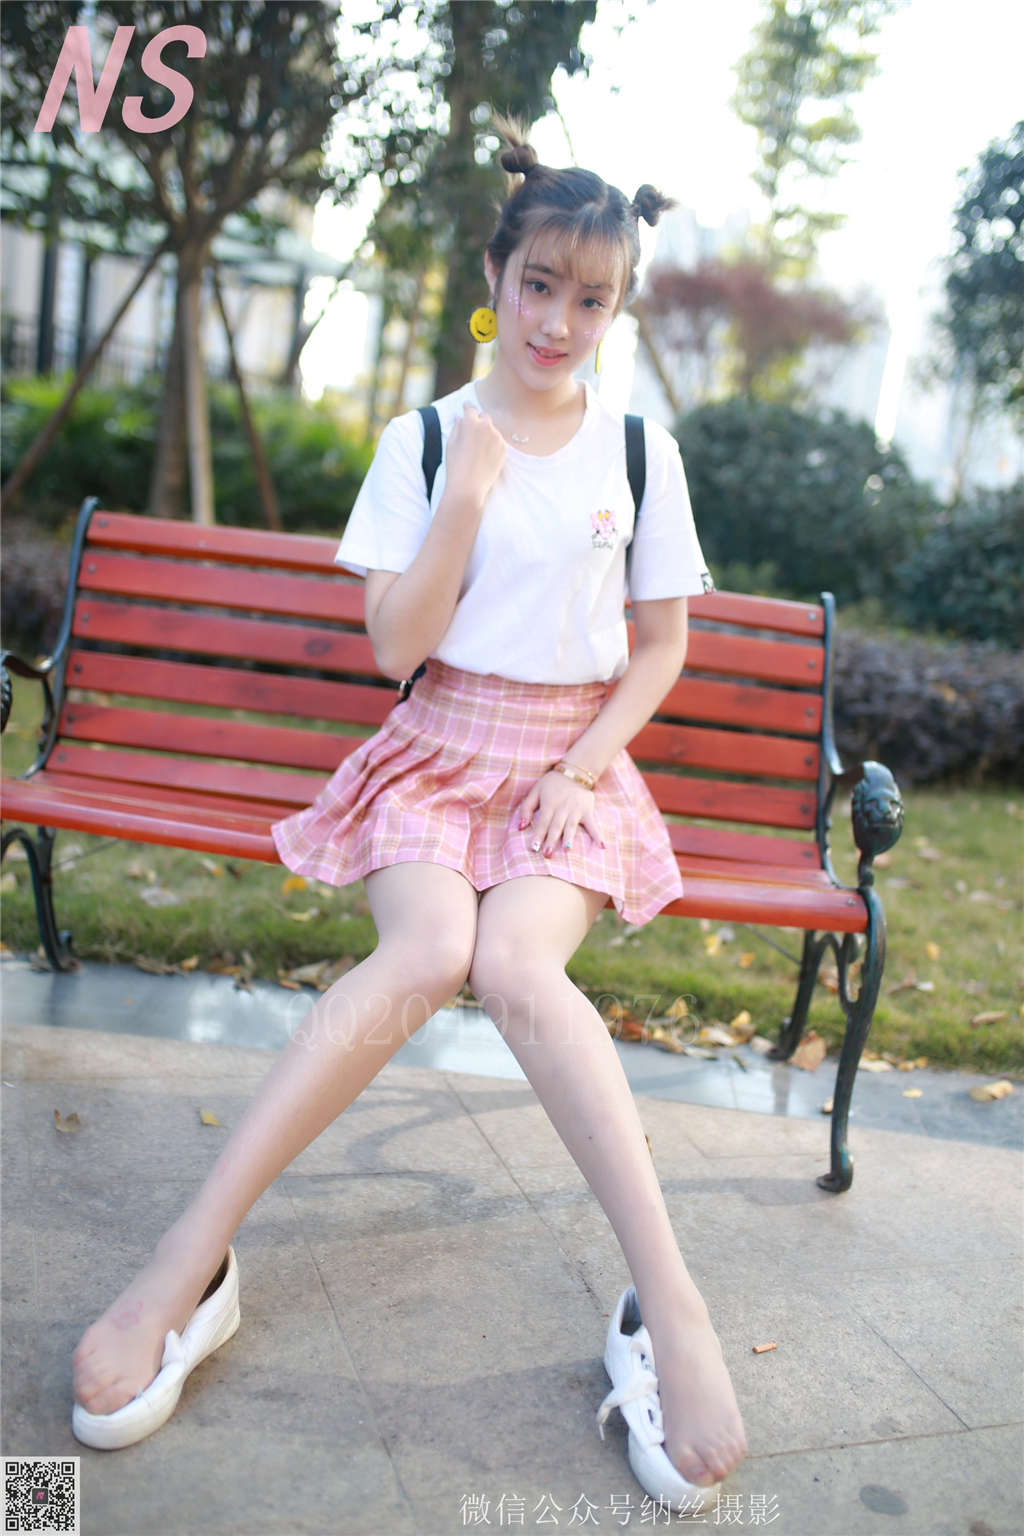 夏天女生穿短裤下蹲时福利风光照片(4)(点击浏览下一张趣图)